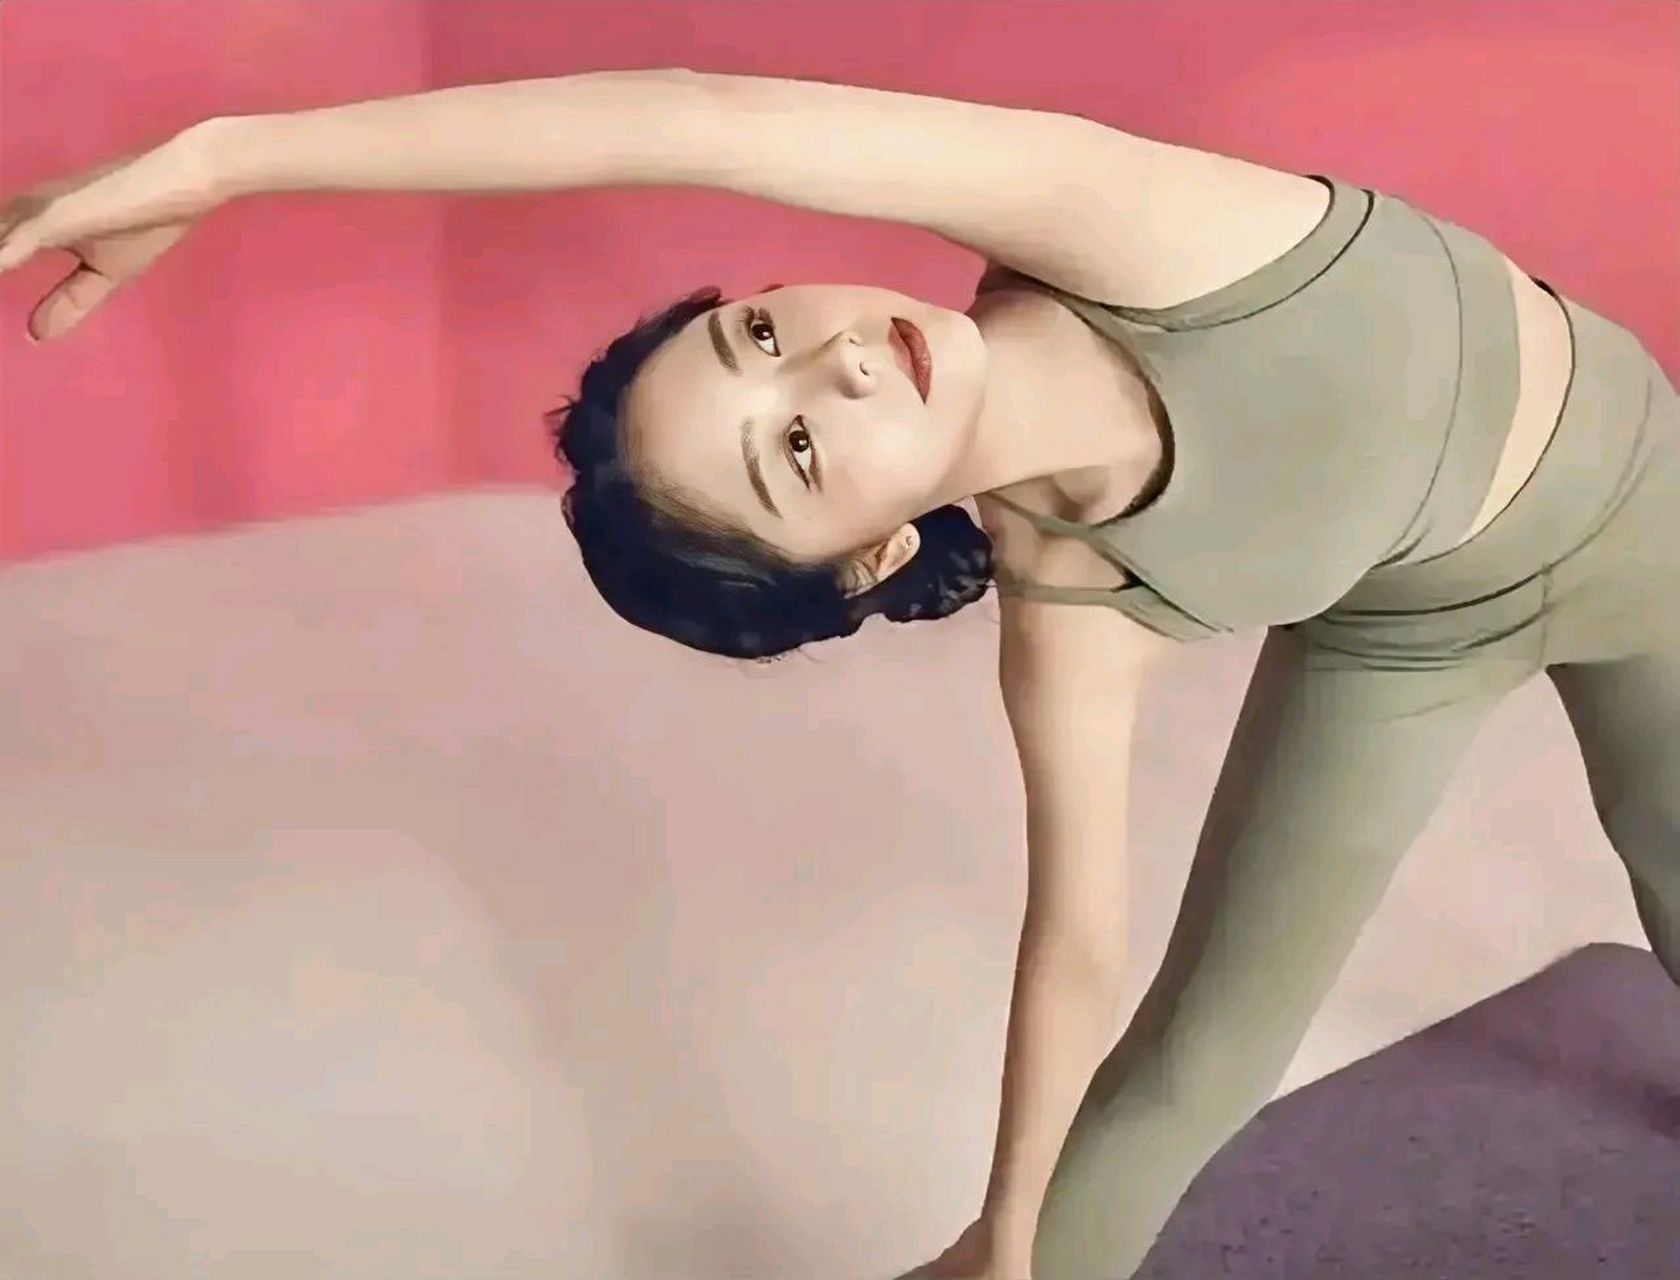 谭松韵瑜伽的动作真美,每一次她的身体在柔软的动作中展现出优雅与